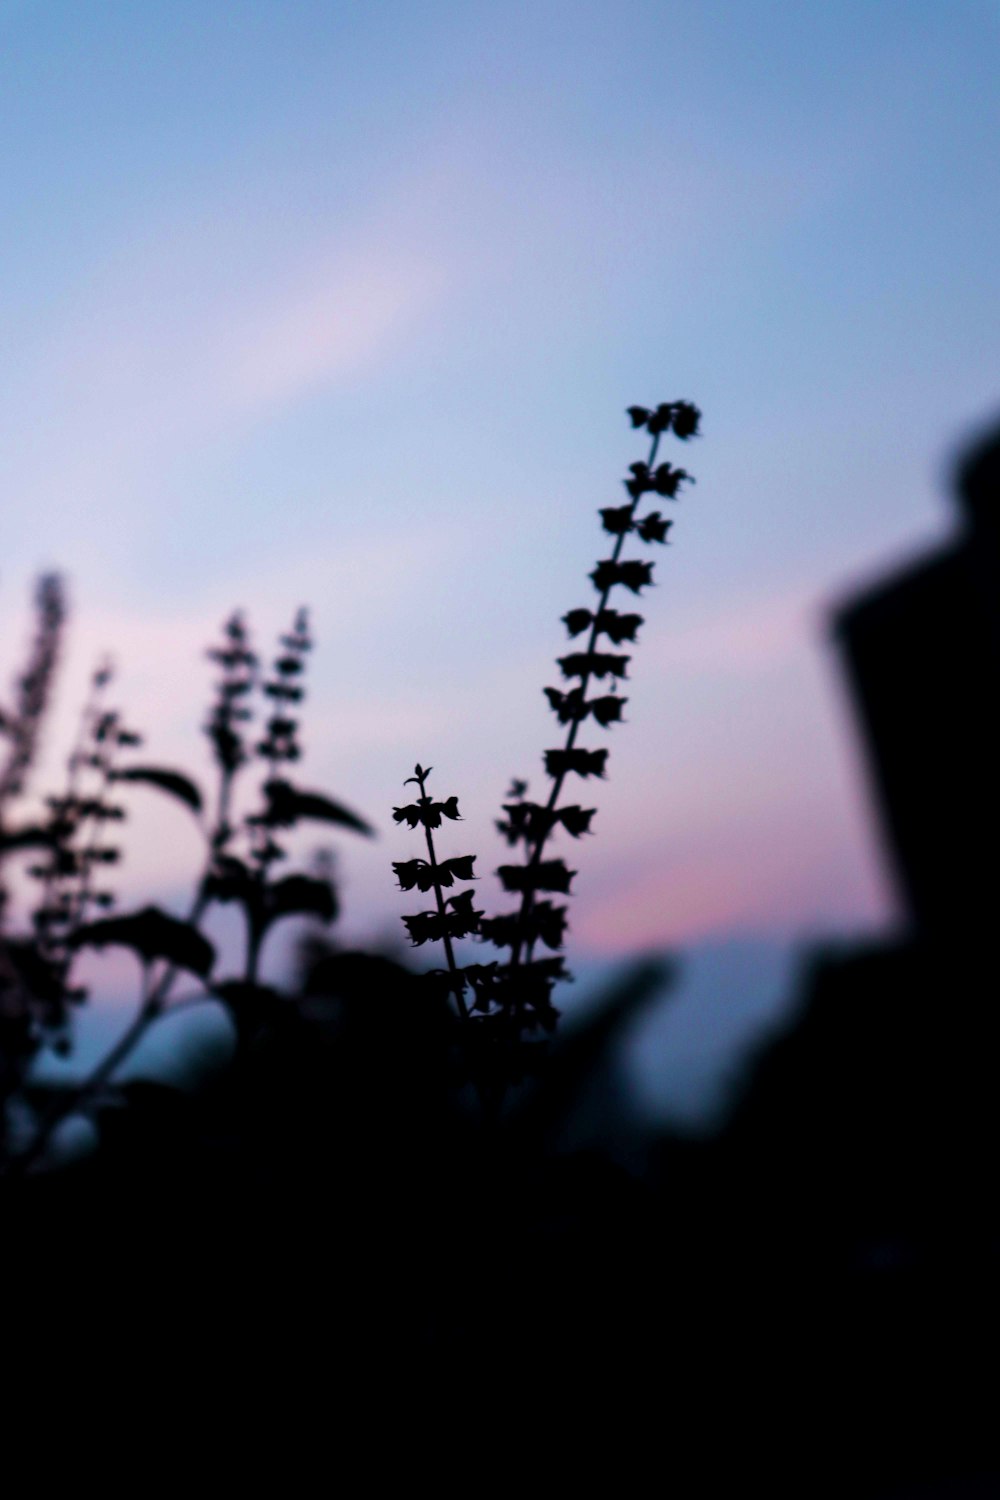 La silhouette di una pianta contro un cielo blu